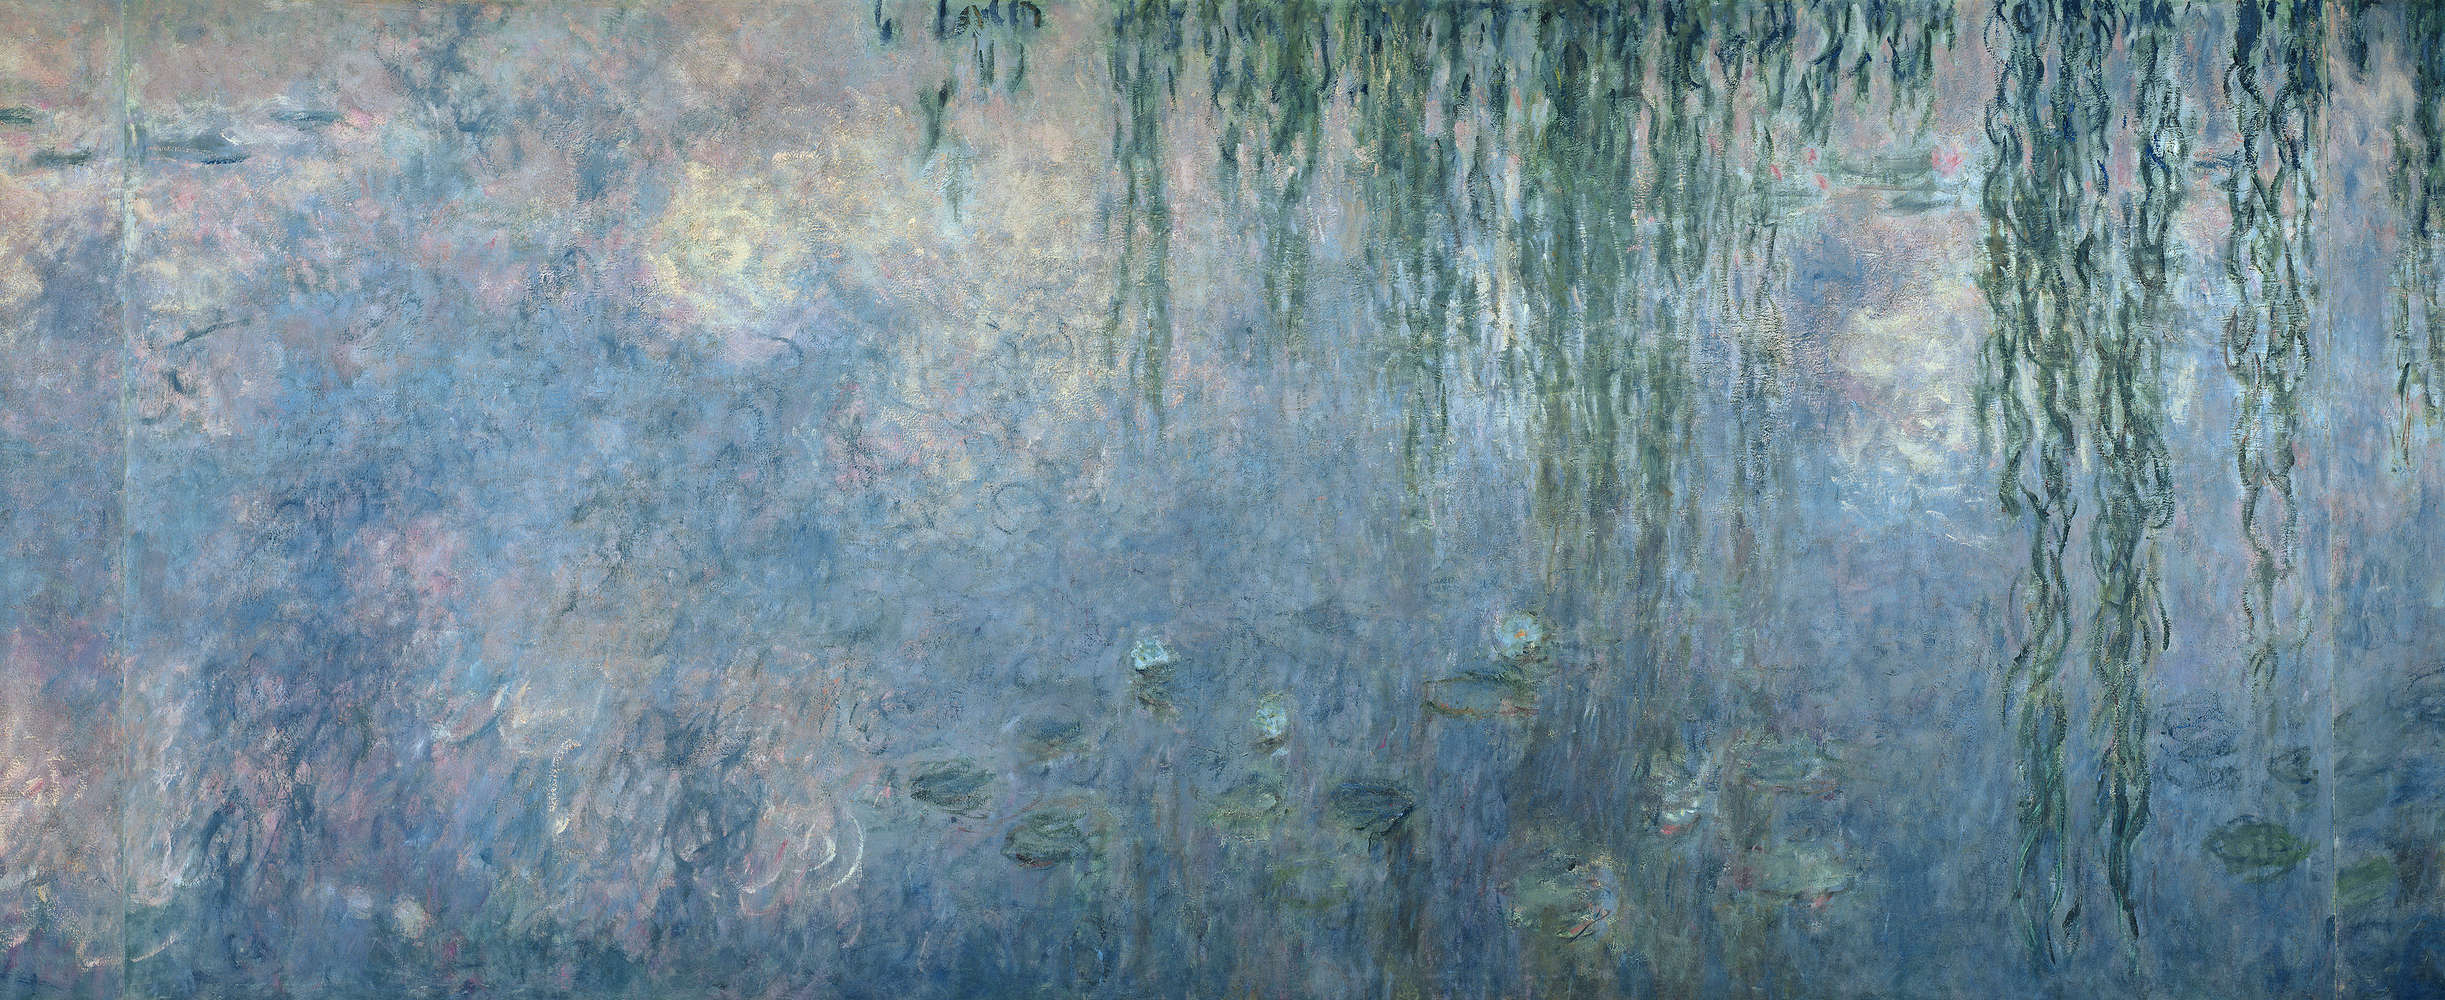             Mural "Nenúfares: Mañana con sauces llorones" detalle de Claude Monet
        